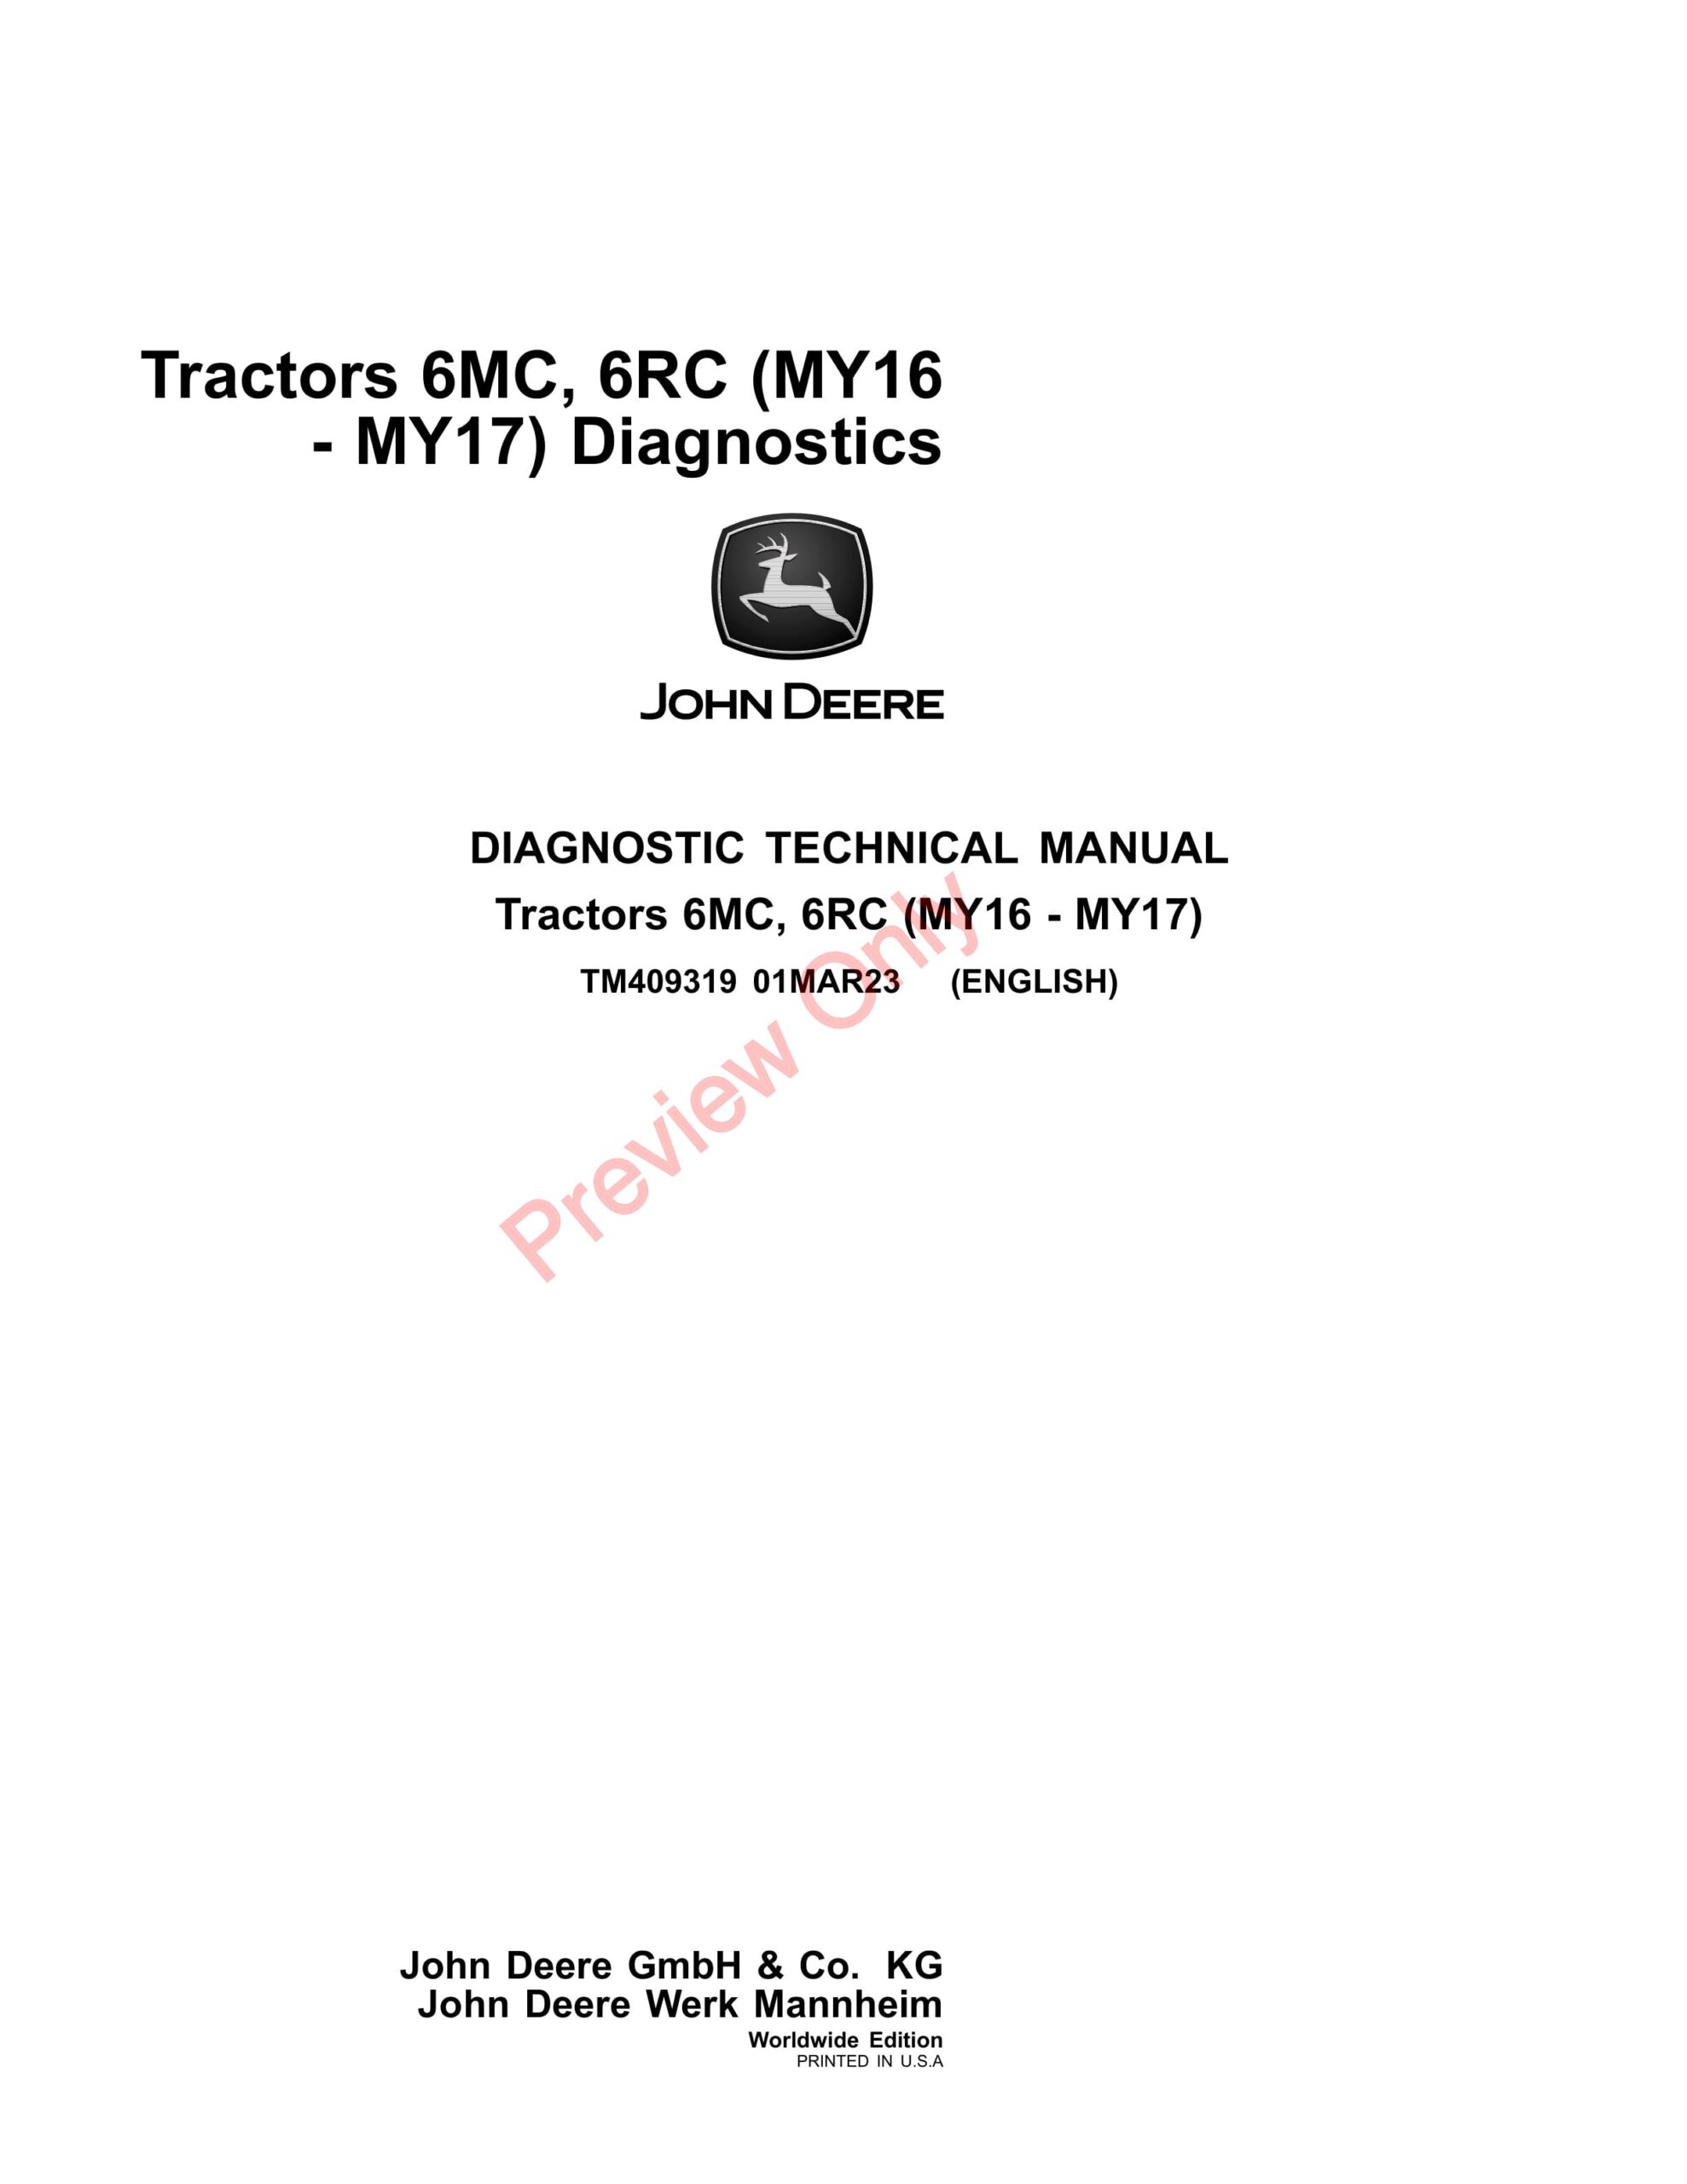 John Deere Tractors 6095MC, 6095RC, 6105MC, 6105RC, 6115MC, 6115RC (MY2016 Diagnostic Technical Manual TM409319 01MAR23-1